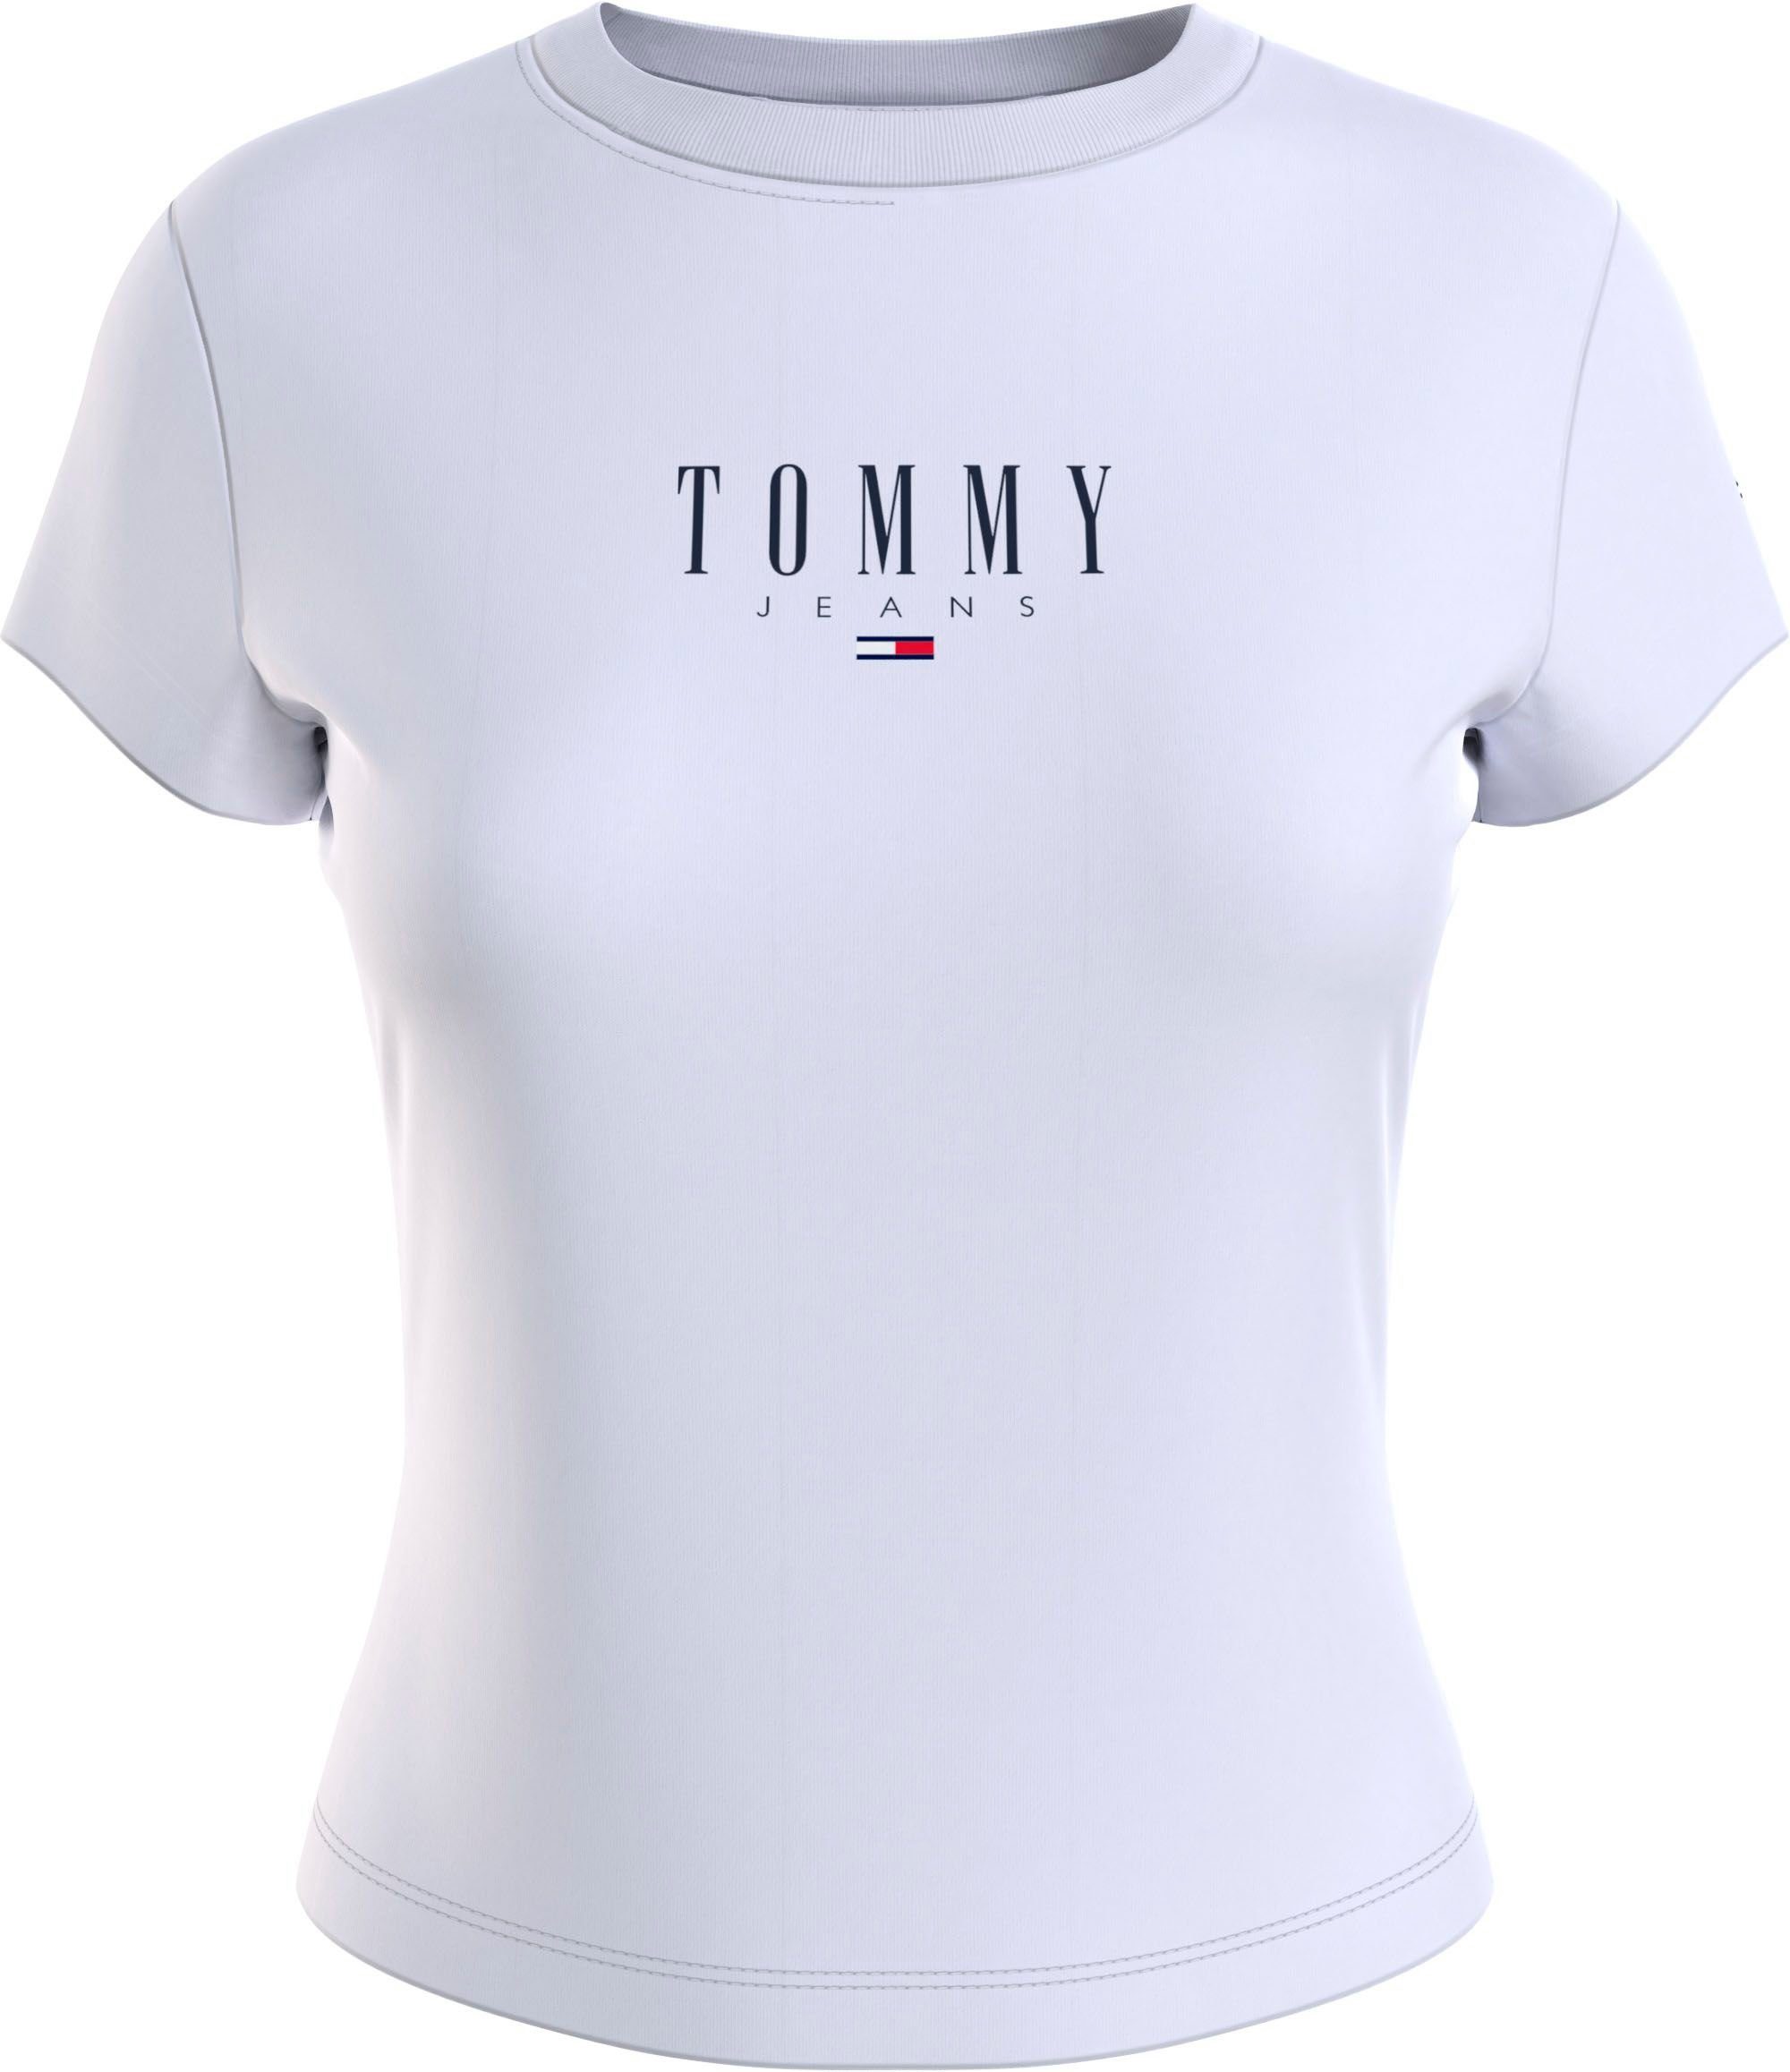 Auffüllen [sofortige Lieferung] Tommy Jeans T-Shirt TJW BBY Logostickerei 2 ESSENTIAL LOGO White mit Logodruck und